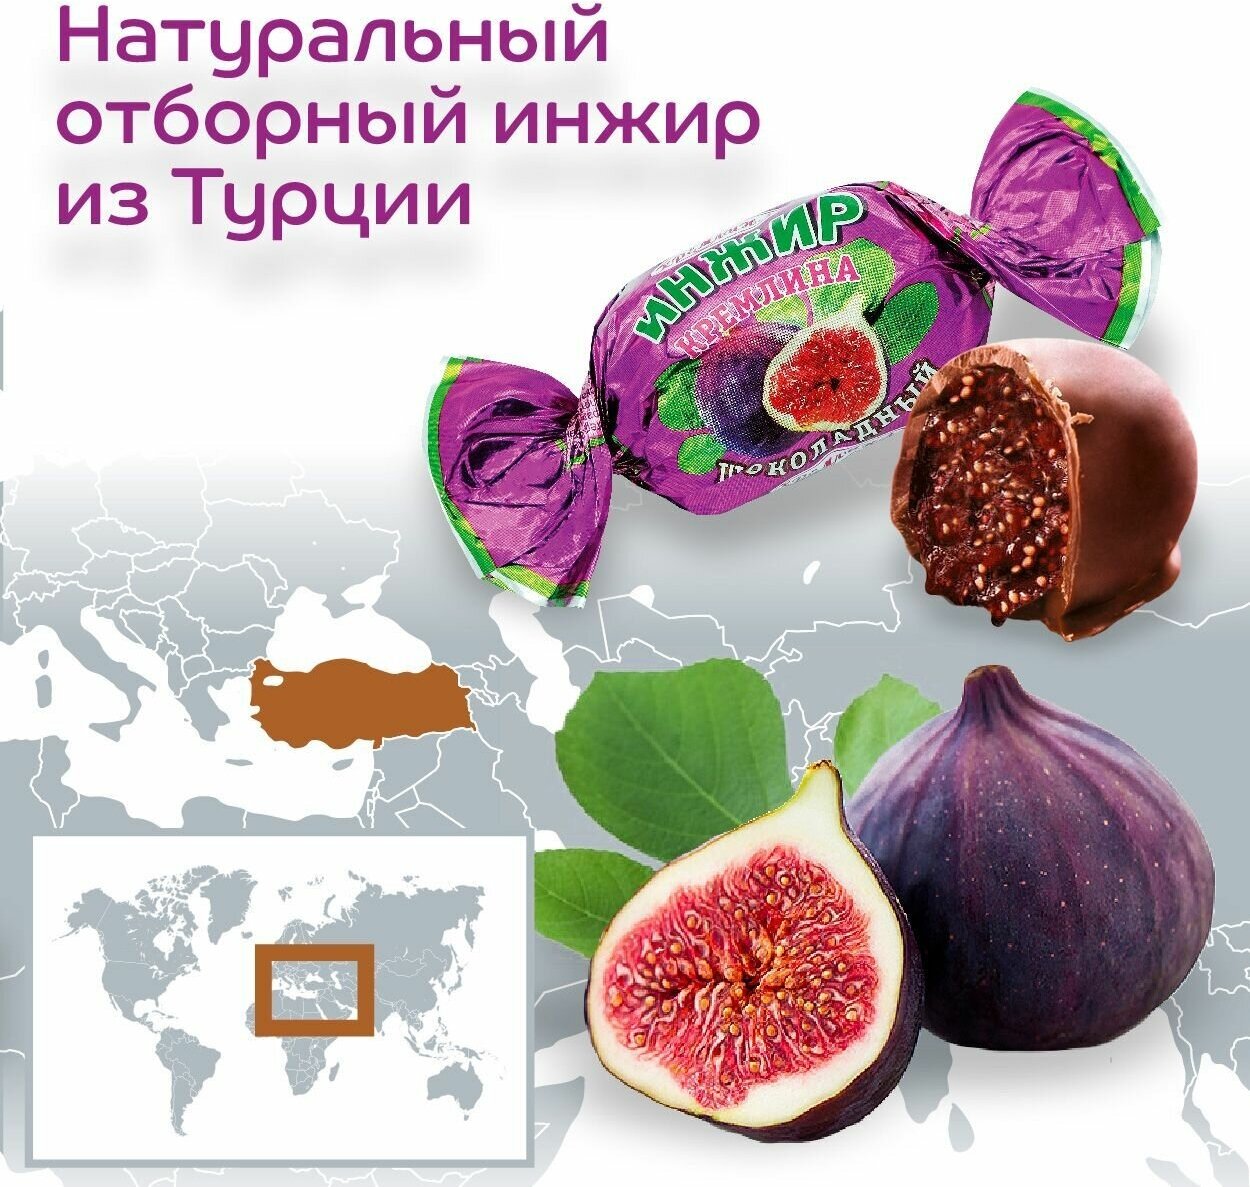 Конфеты из сухофруктов Микс фрукты шоколадные: Чернослив, Инжир, Курага и Финик, пакет 1 кг